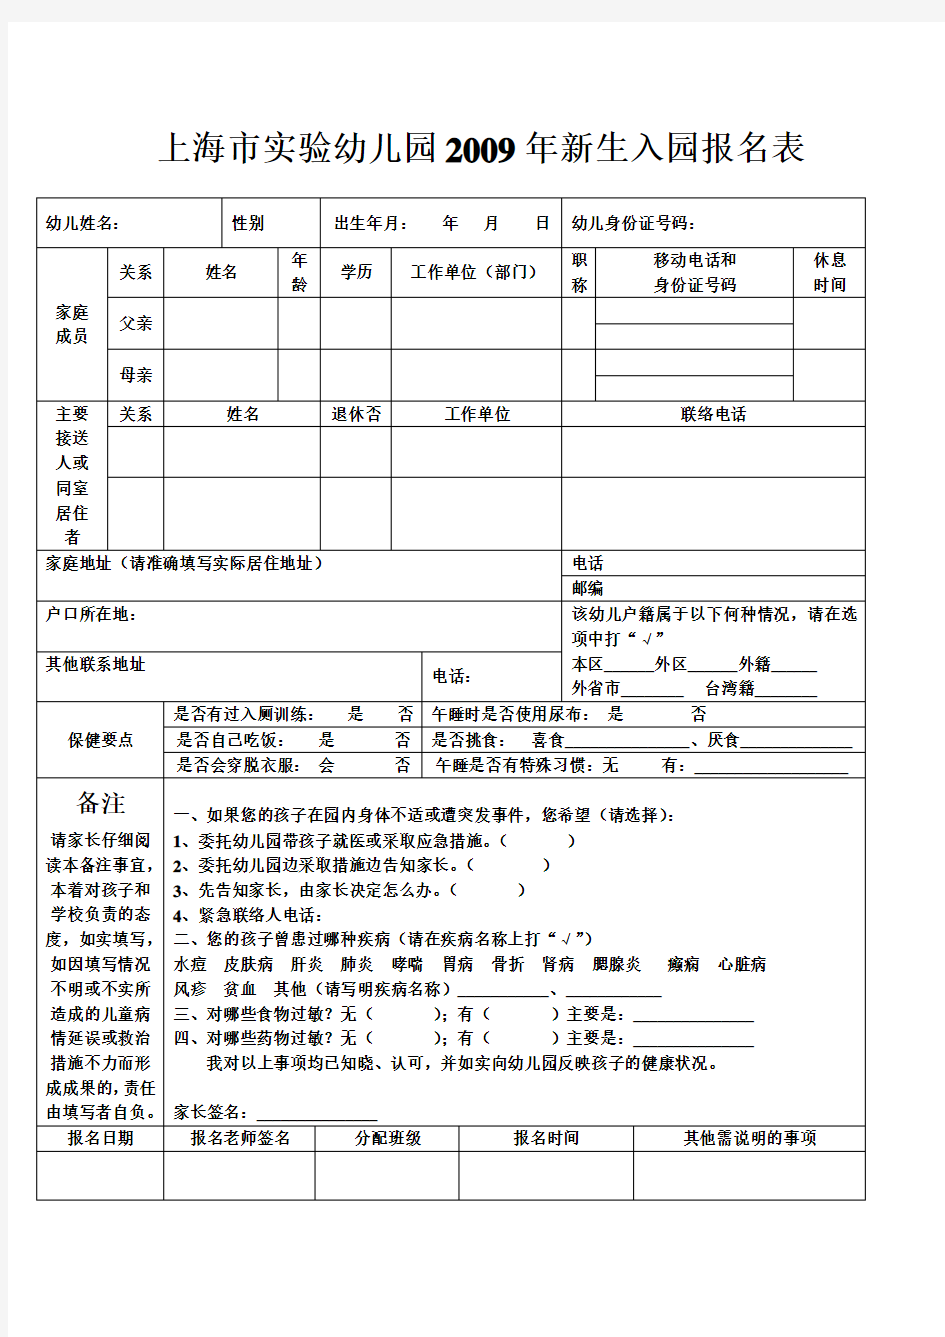 上海市实验幼儿园新生入园报名表